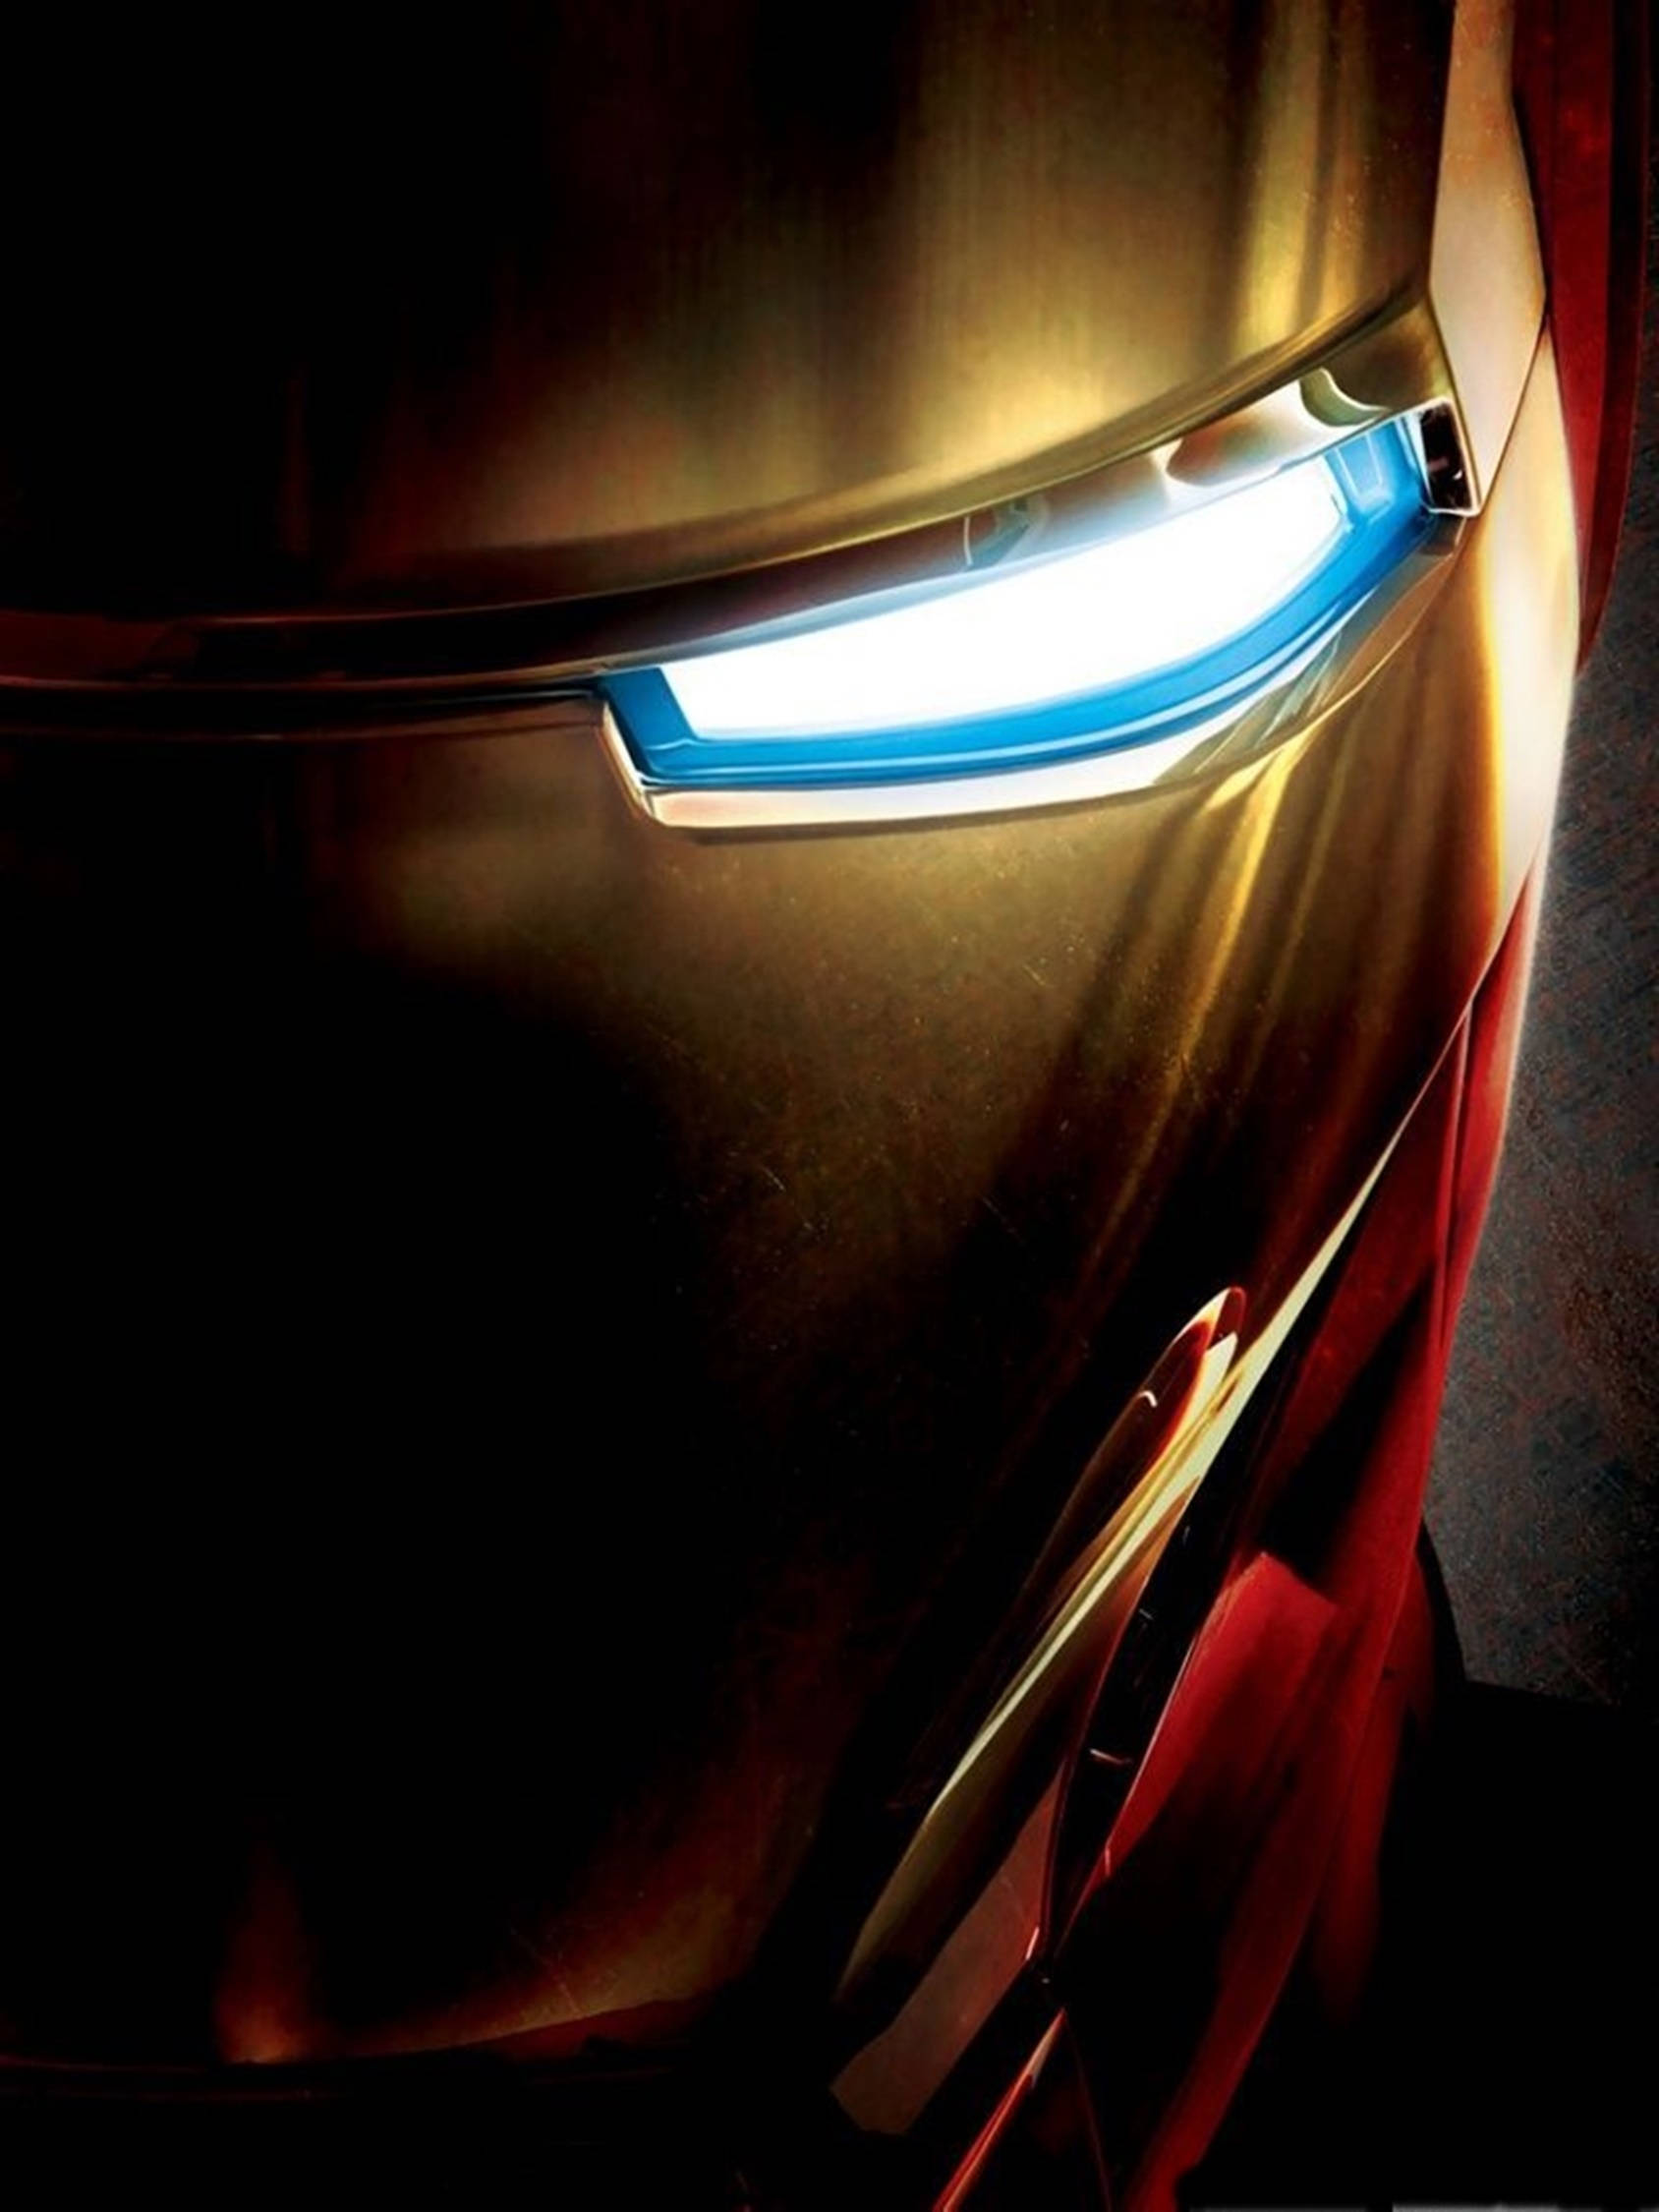 Free Iron Man 4k Wallpaper Downloads, [100+] Iron Man 4k Wallpapers for  FREE 